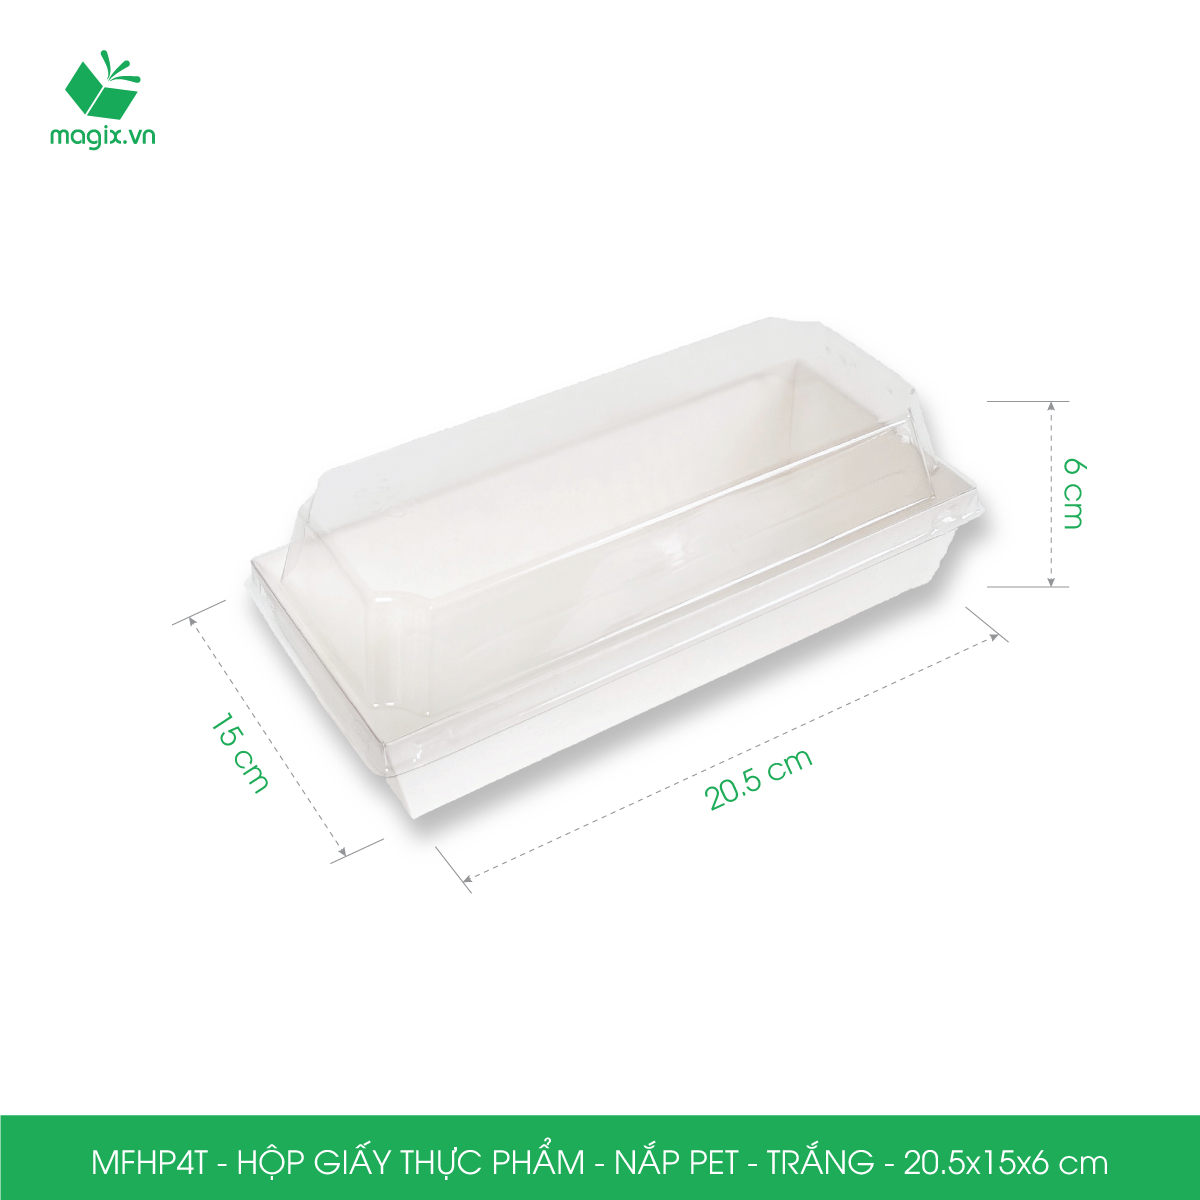 MFHP4T - 20.5x15x6 cm -50 hộp giấy thực phẩm màu trắng nắp Pet, hộp giấy chữ nhật đựng thức ăn, hộp bánh nắp trong